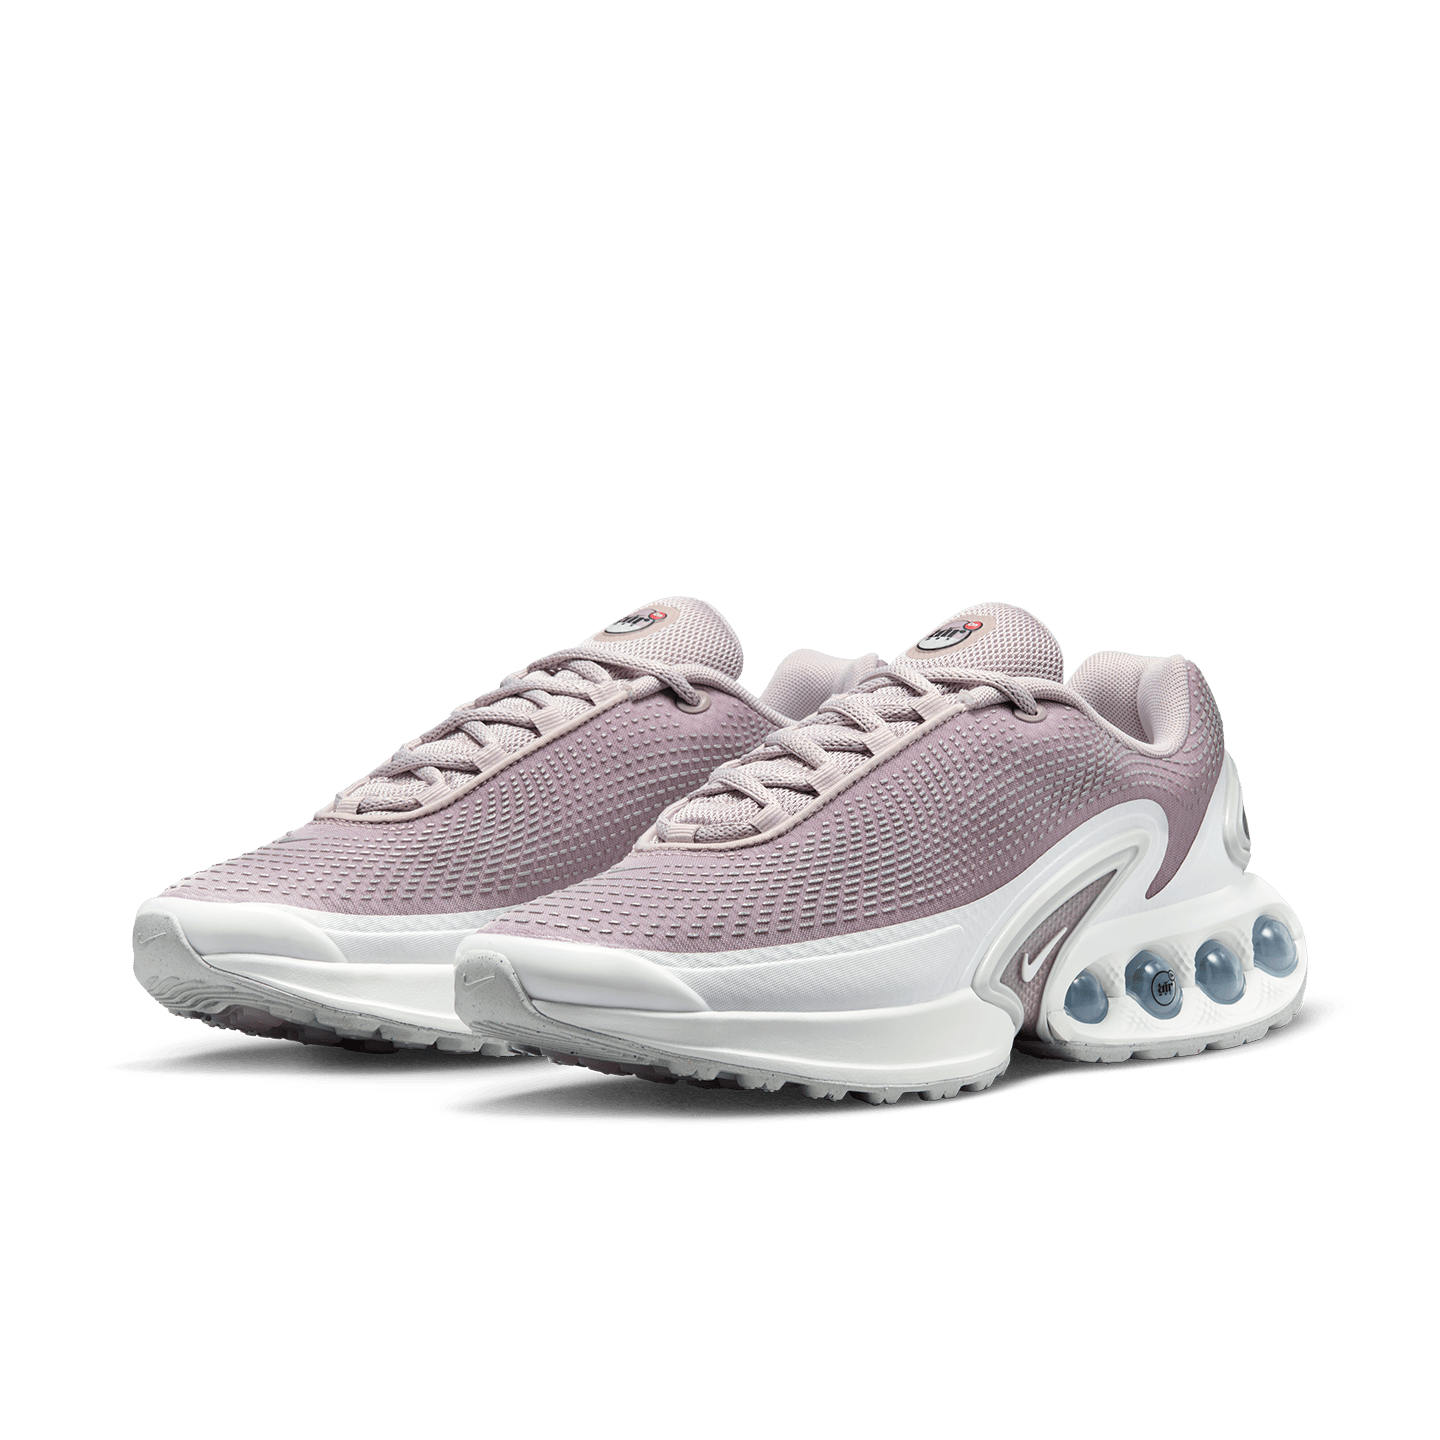 Shoe model in Platinum Violet color